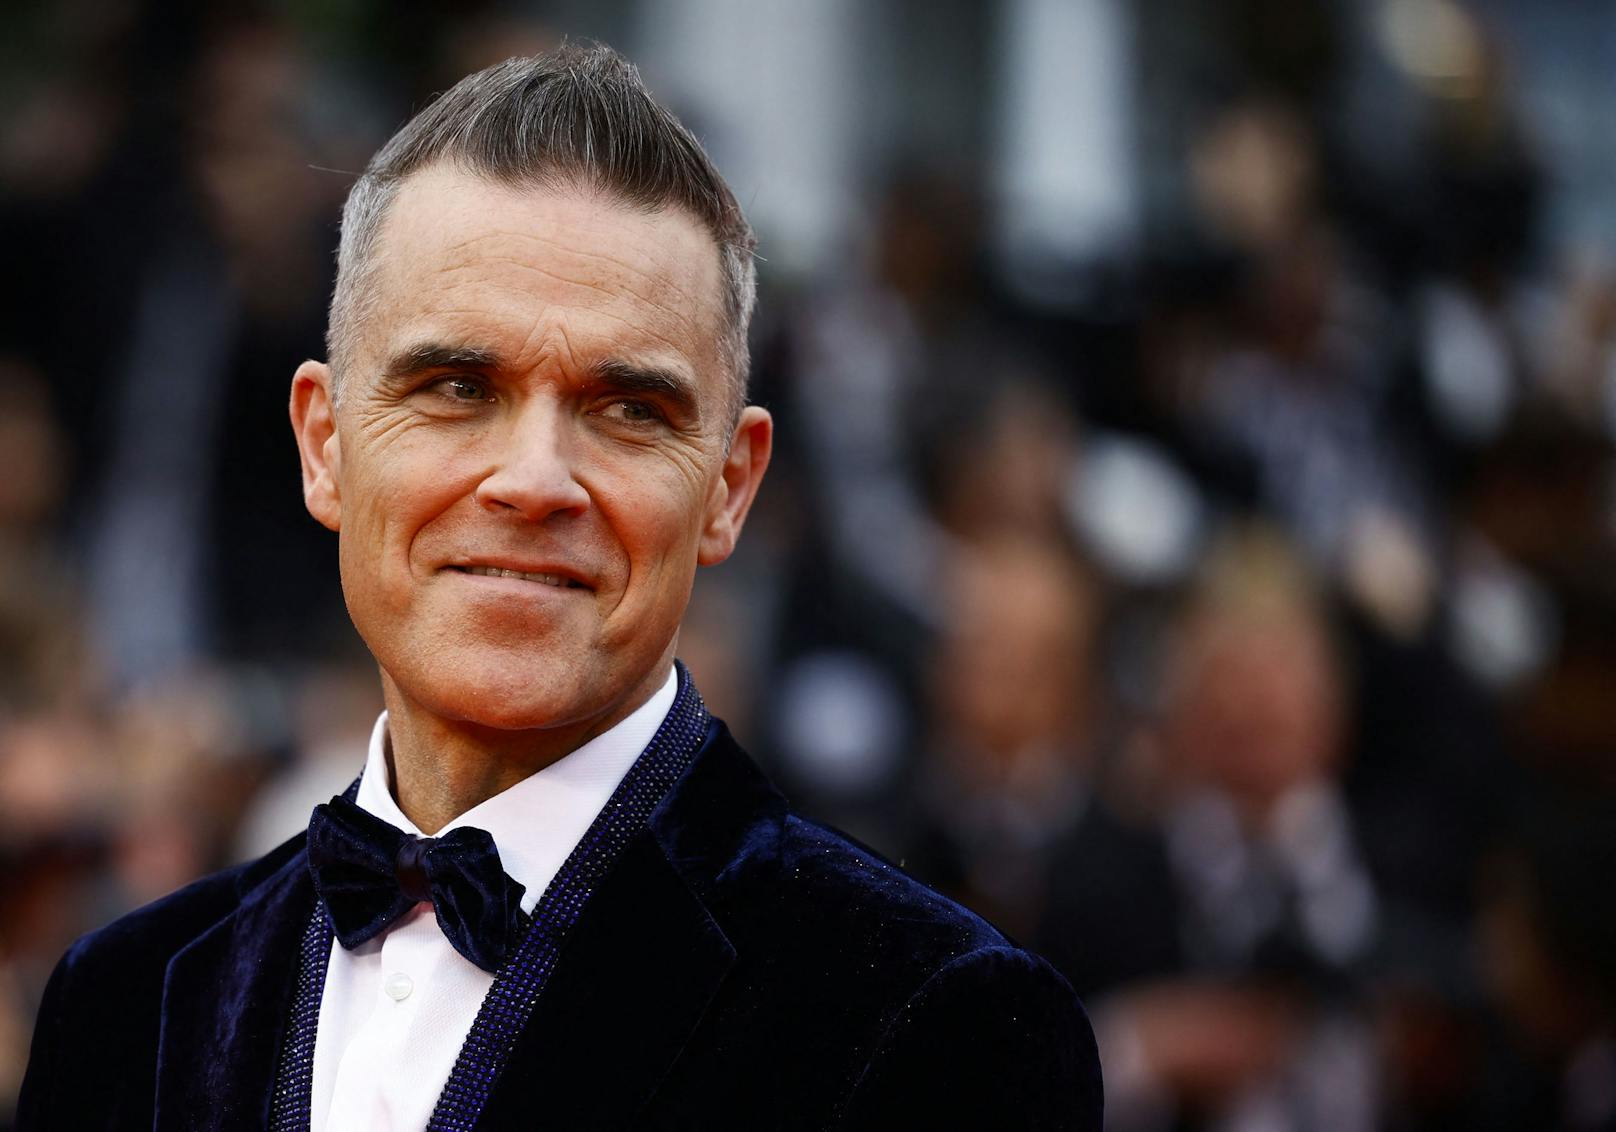 Nach Umzug – Foto von Robbie Williams wirft Fragen auf